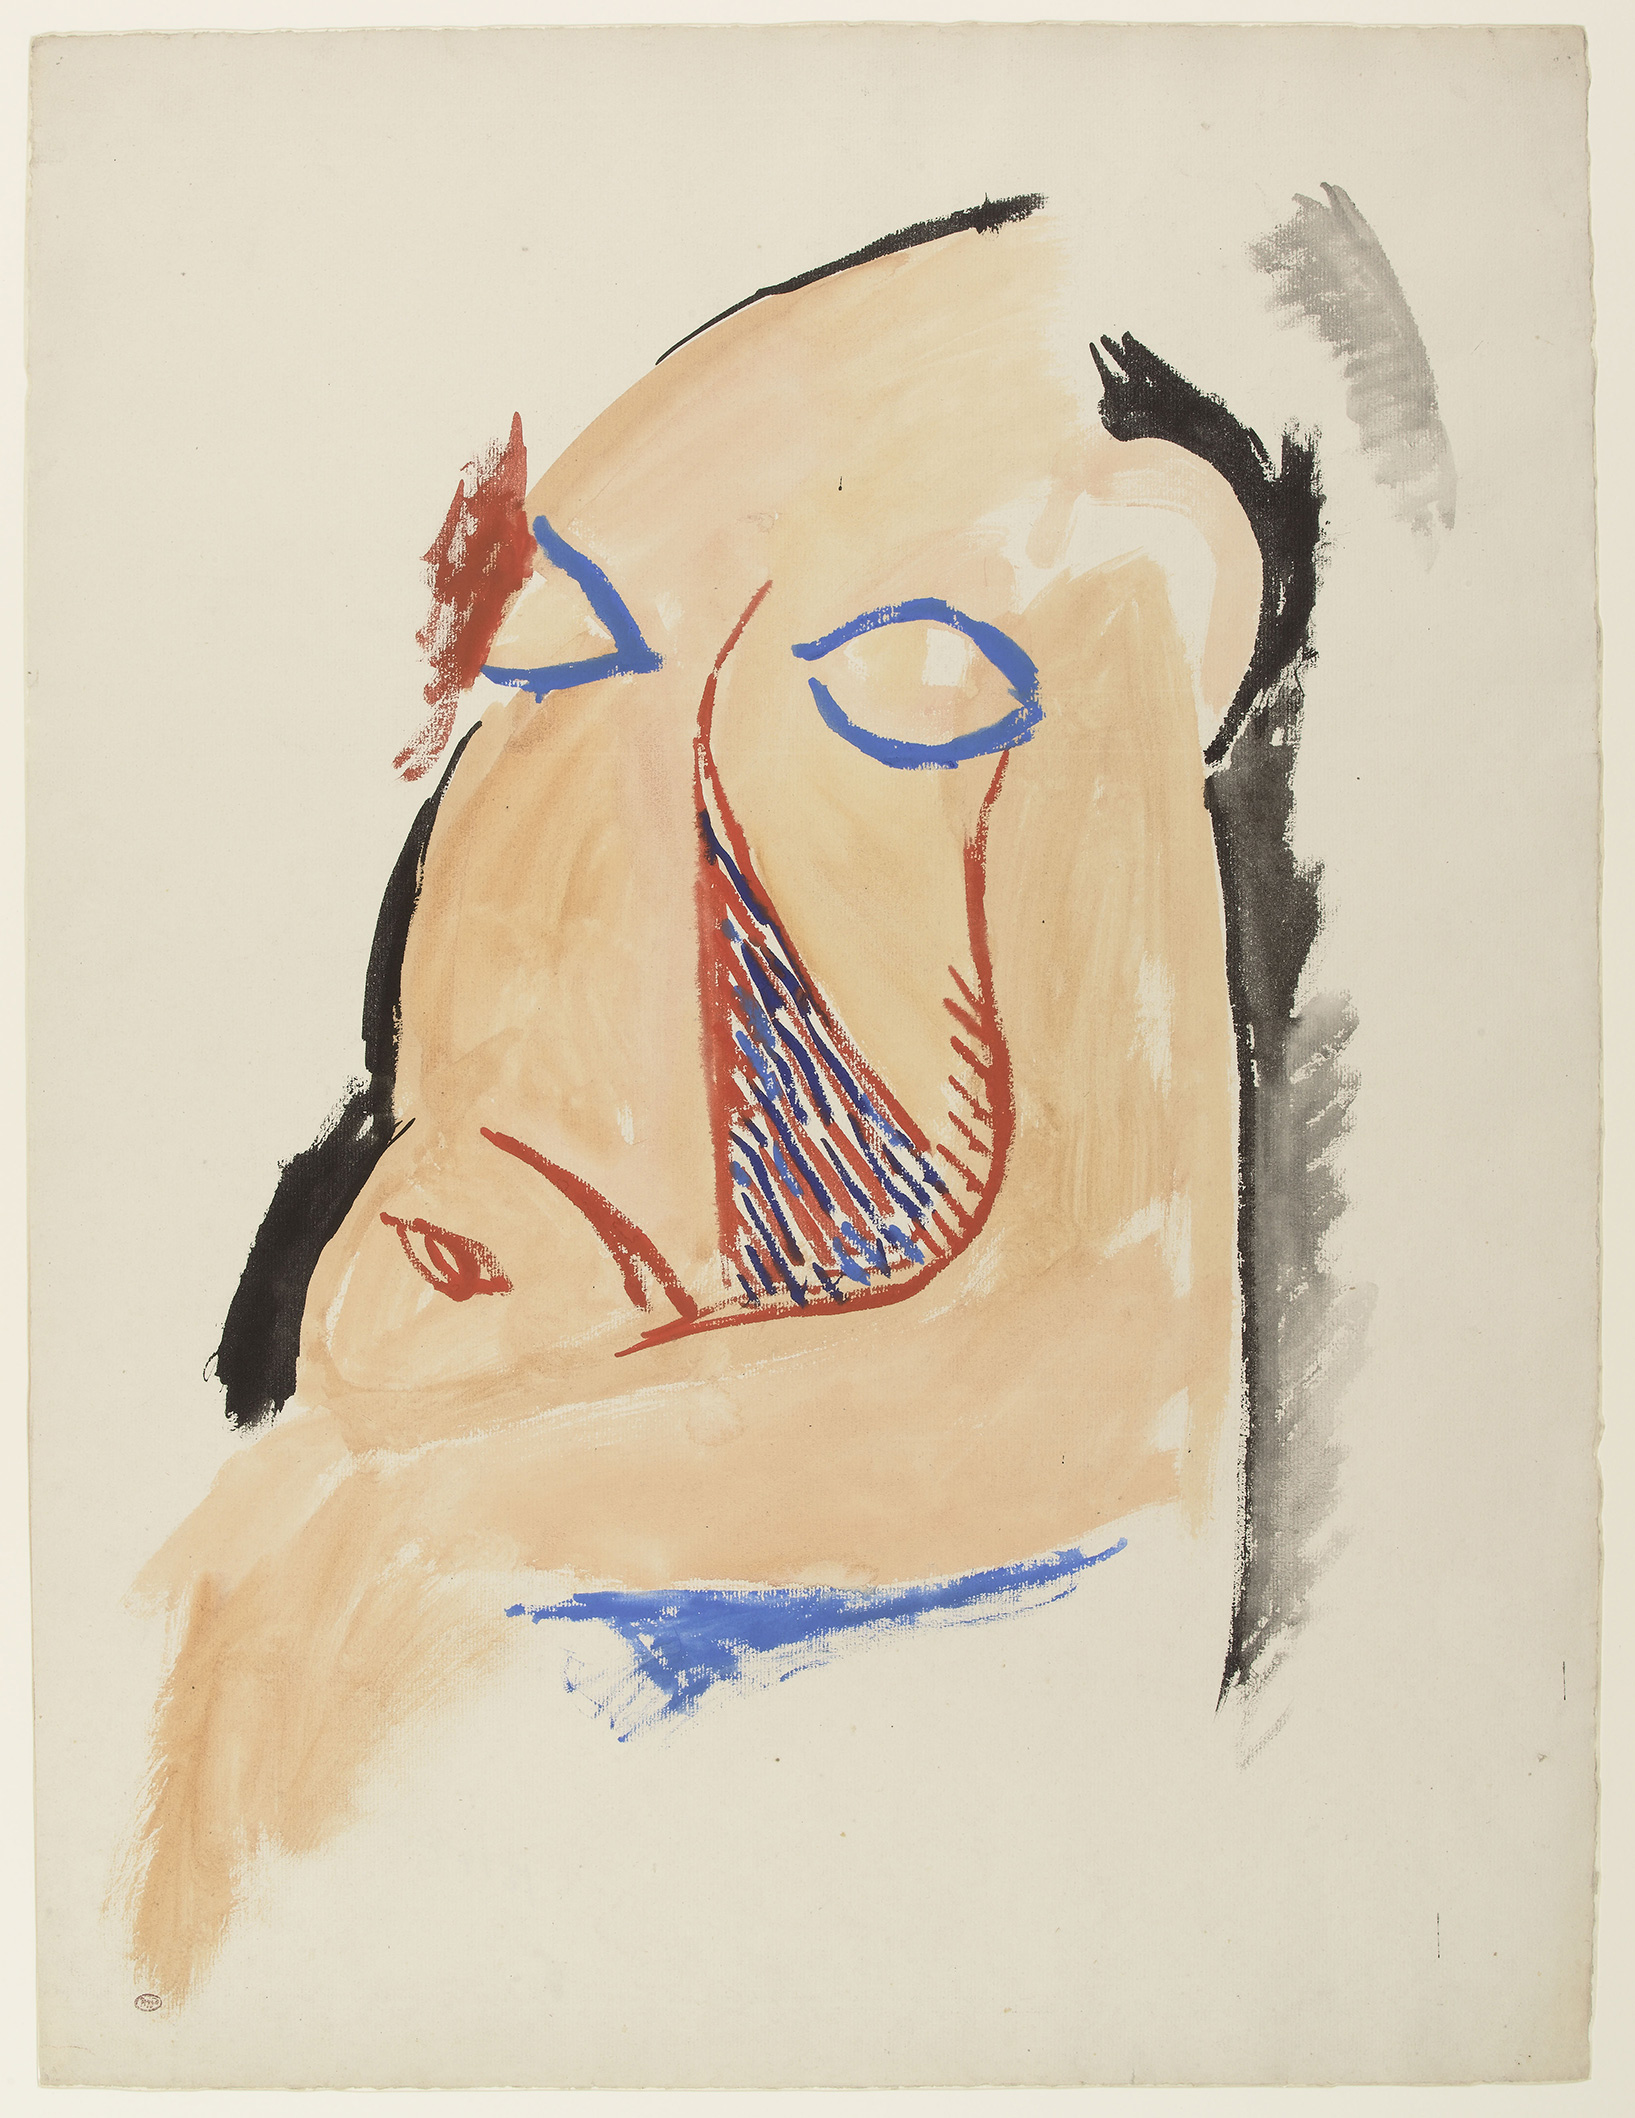 Picasso - Etude pour "les demoiselles d'Avignon" : tête de la demoiselle accroupie - MP539 - 07-506102